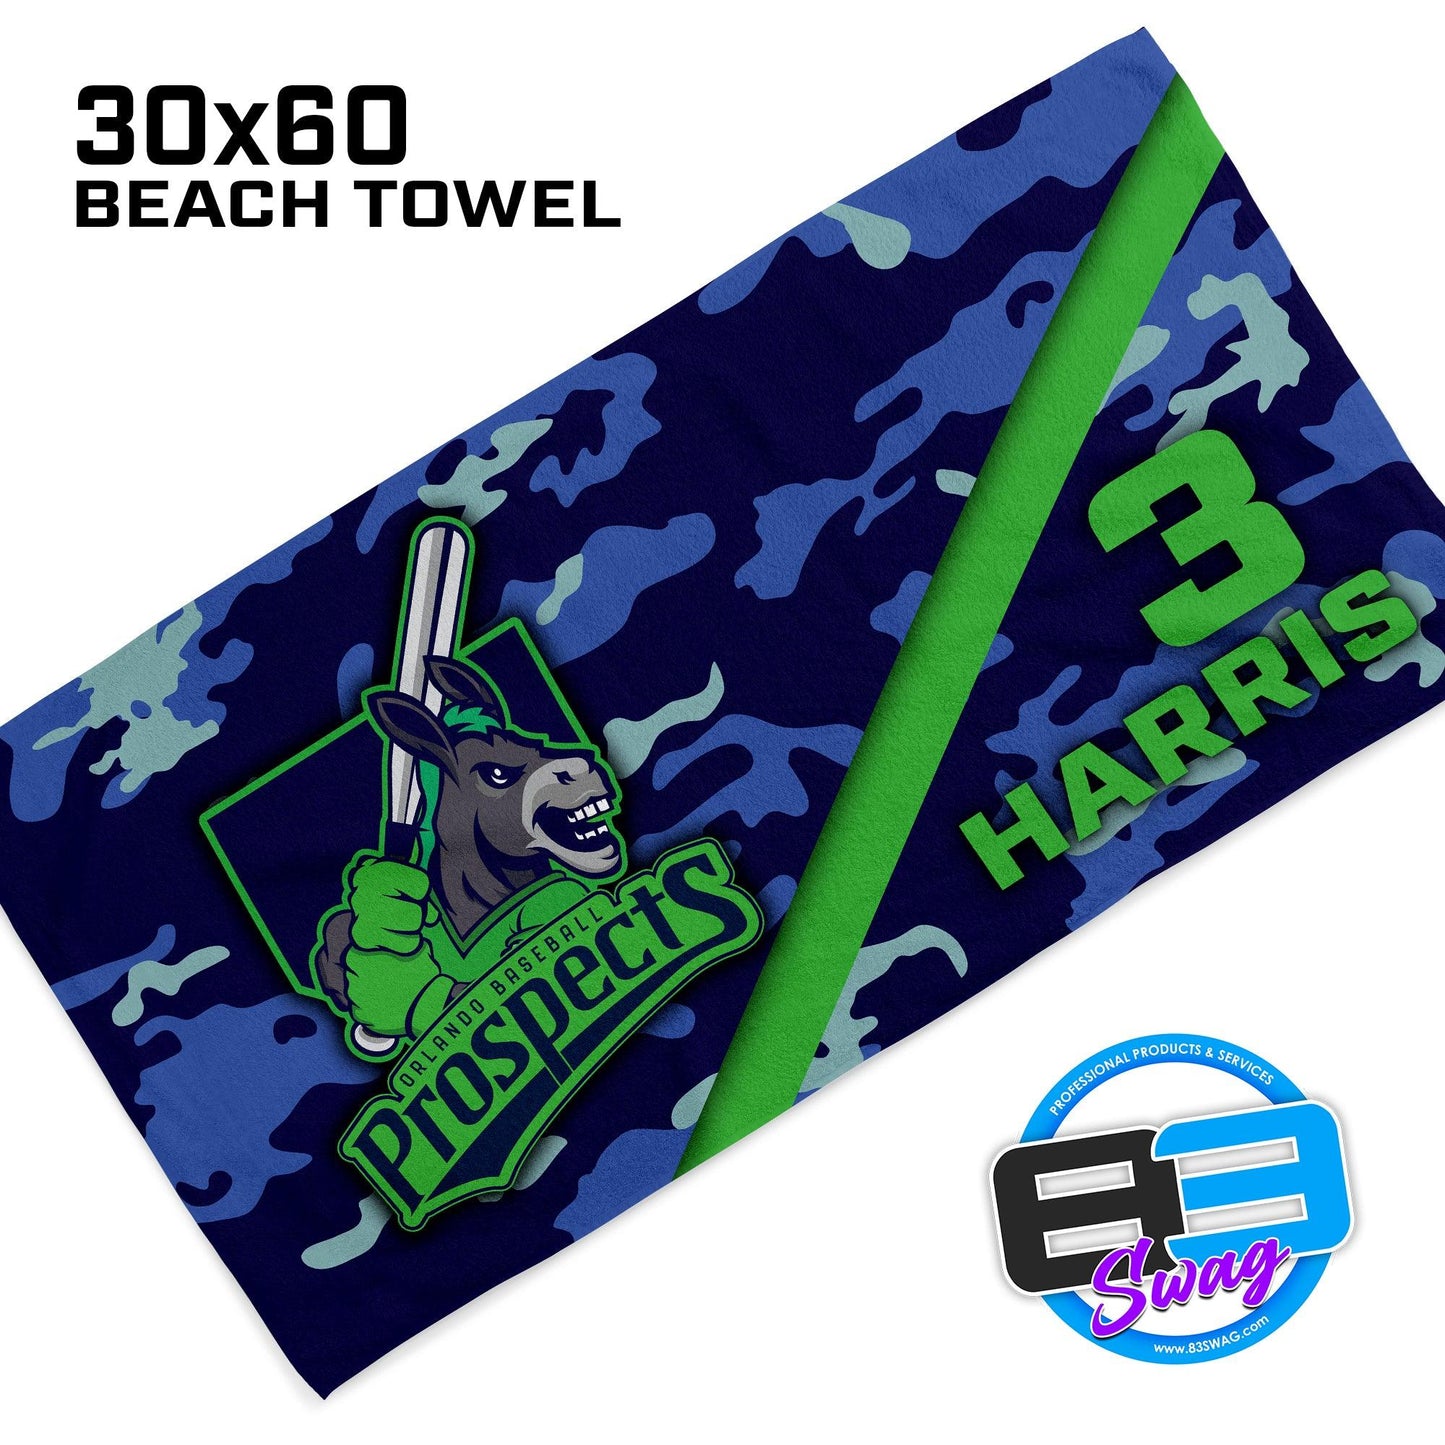 Swamp Donkeys - 30"x60" Beach Towel - 83Swag